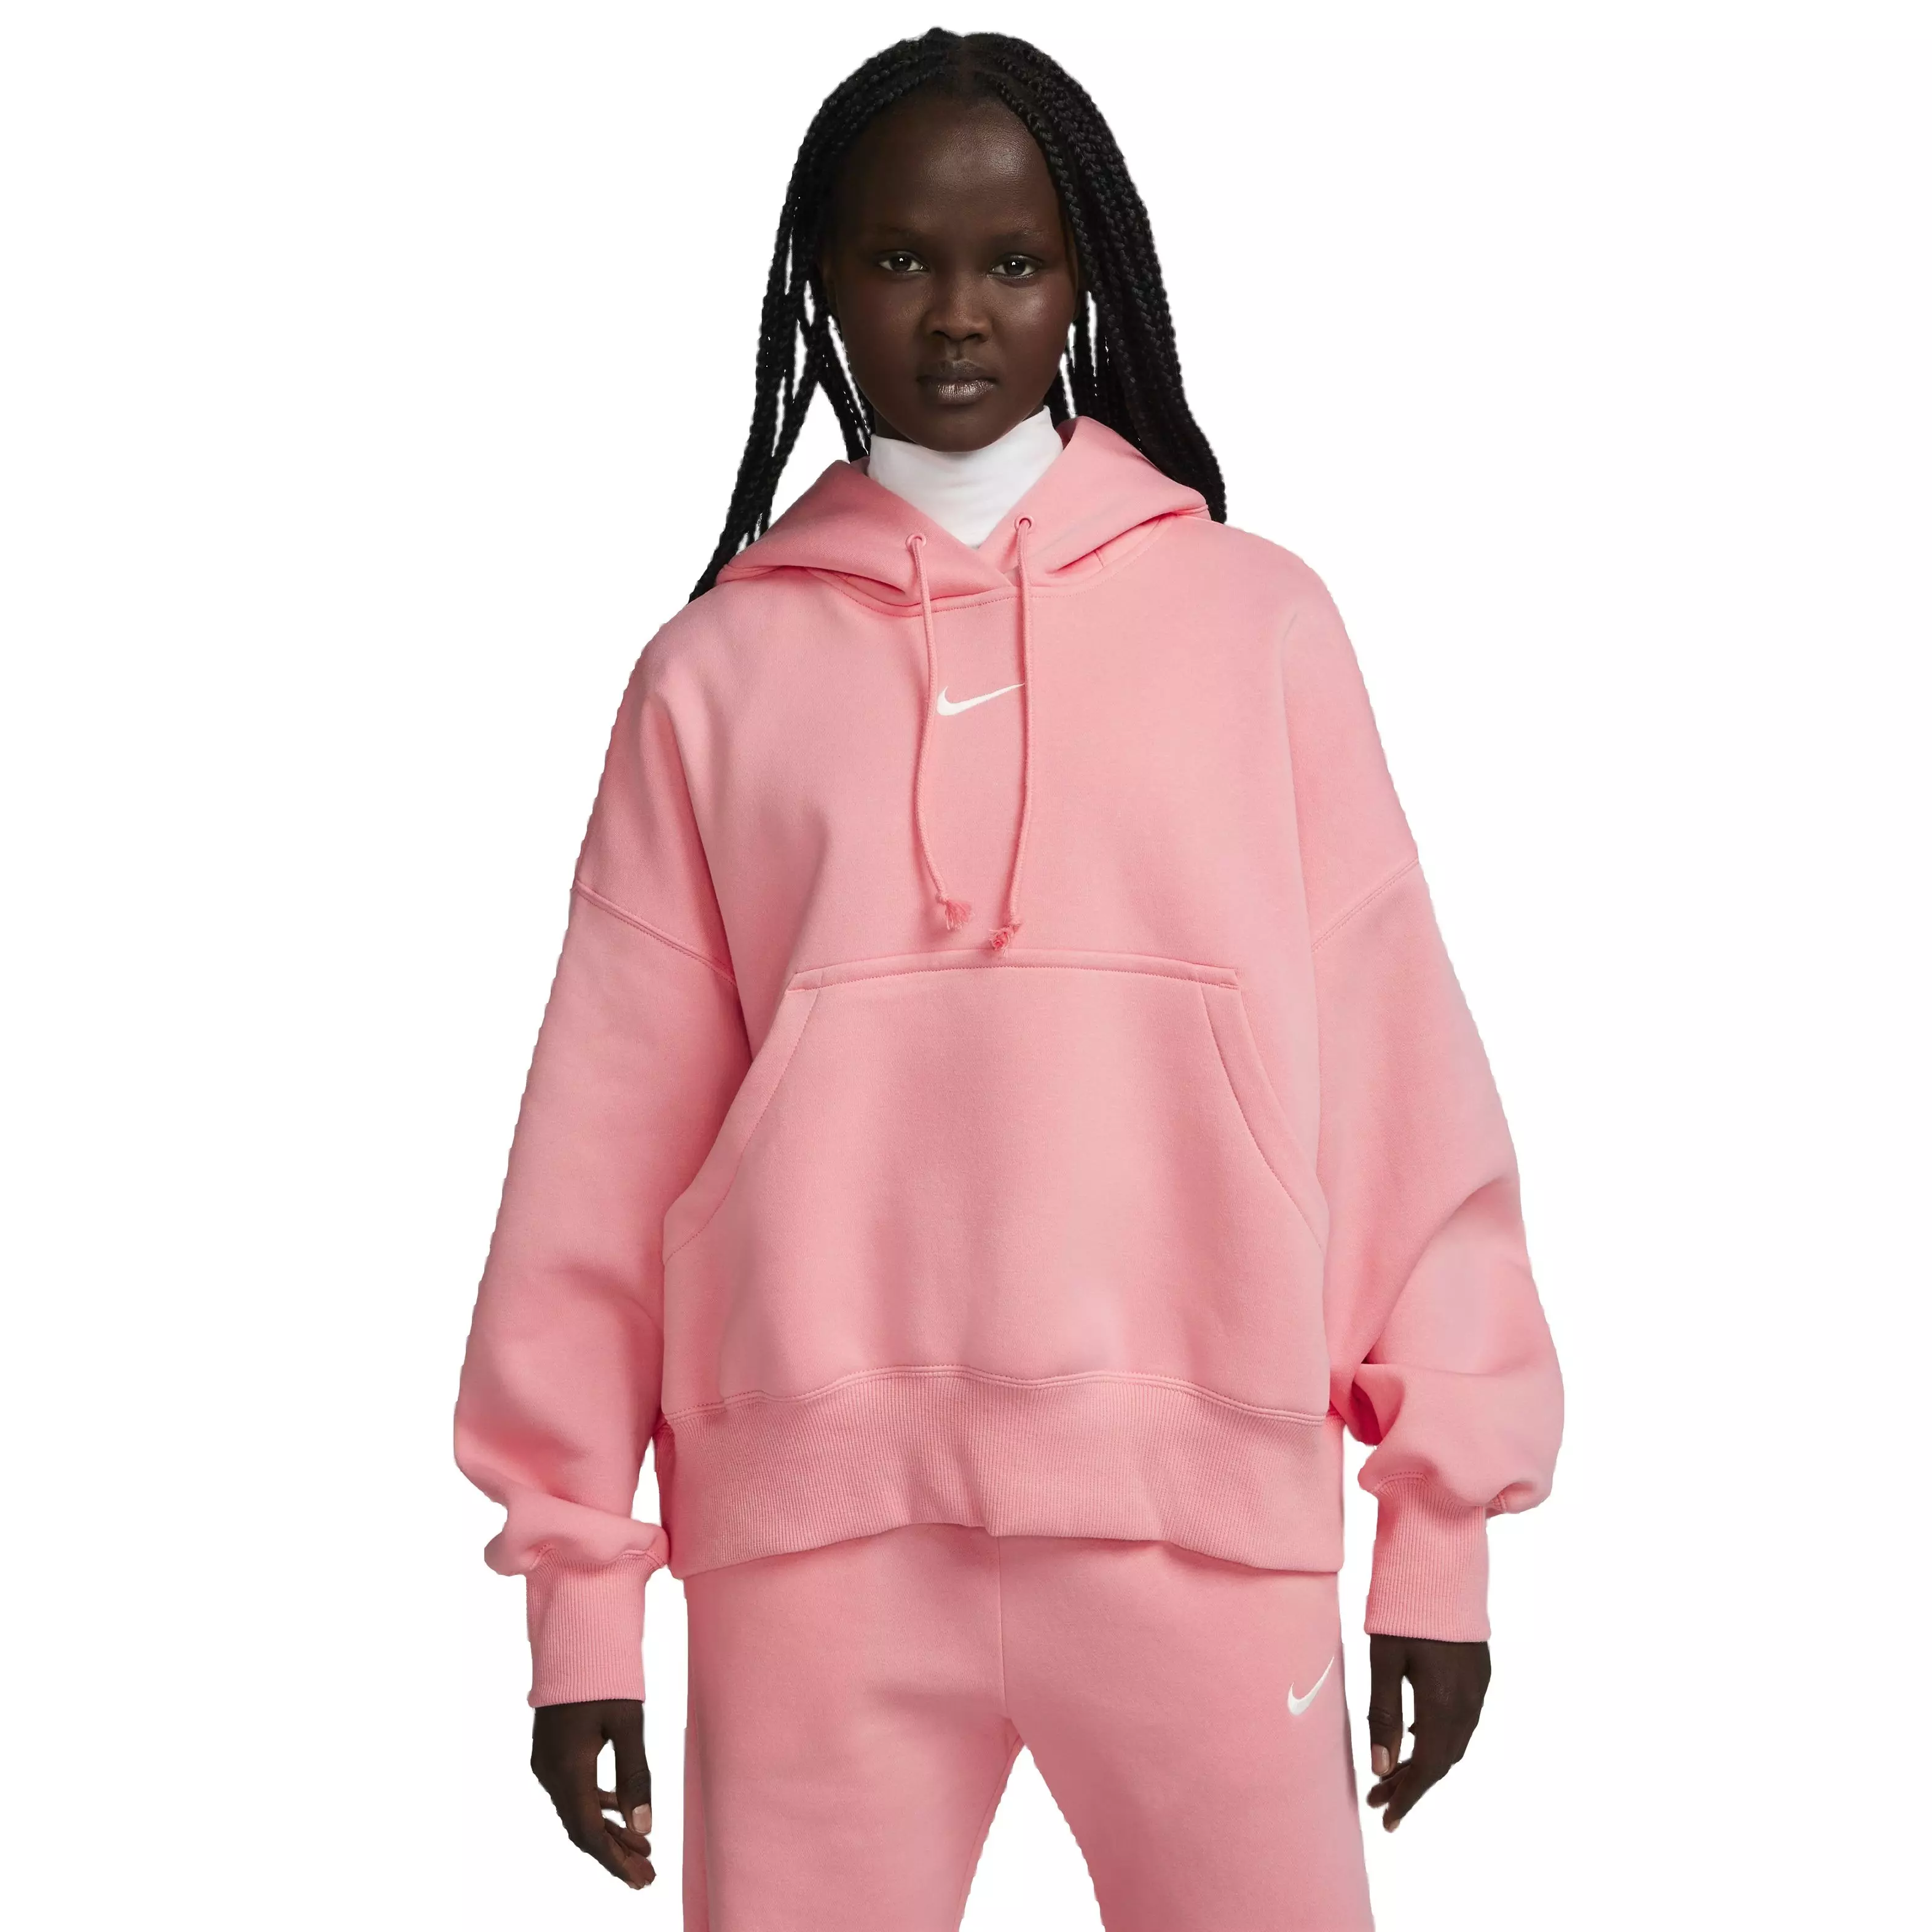 Nike Sportswear Phoenix Fleece Over-Oversized Pullover Hoodie